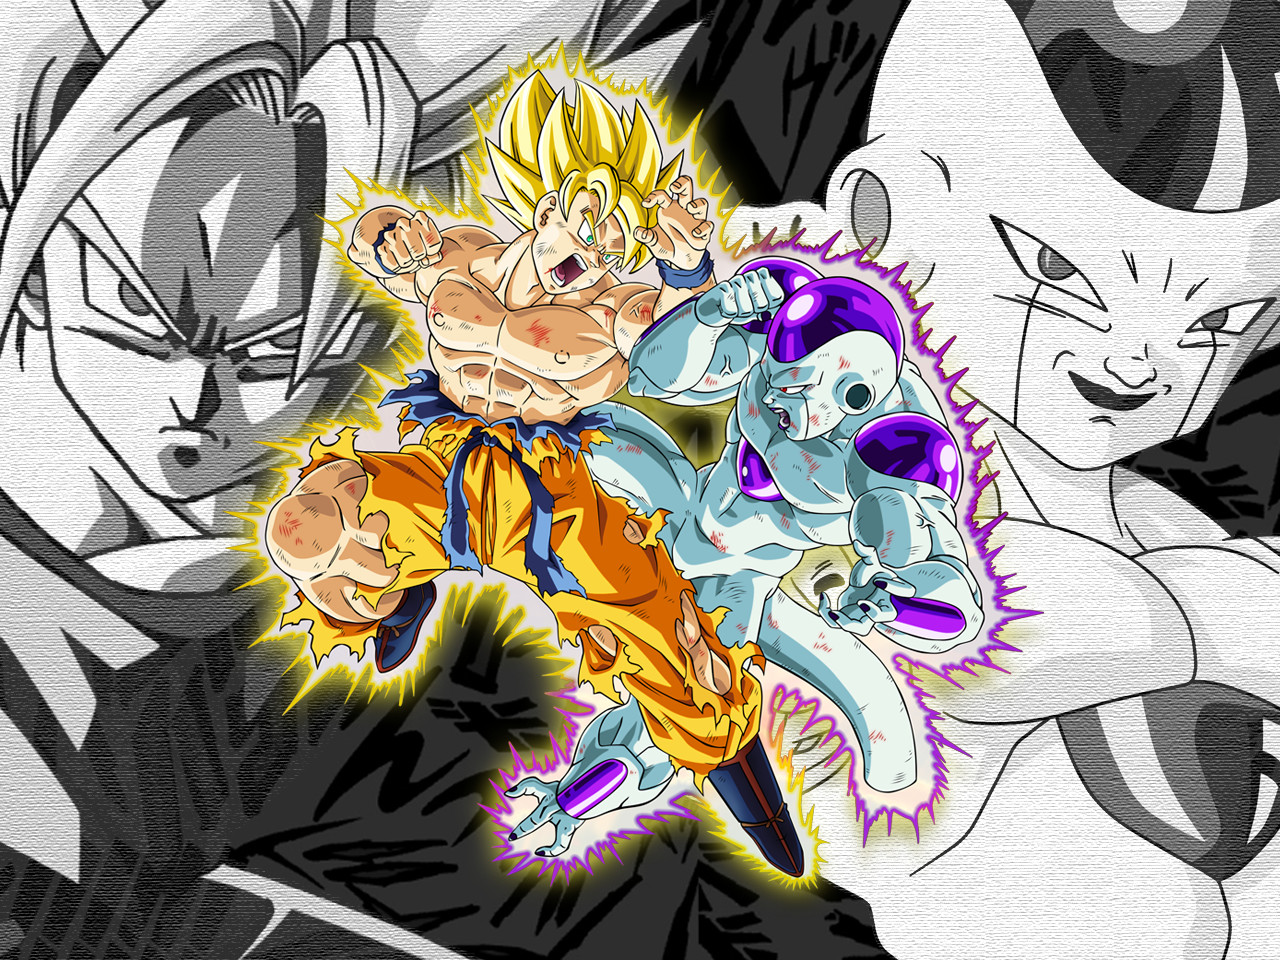 Wallpaper Goku vs Frieza by Dony910 on DeviantArt